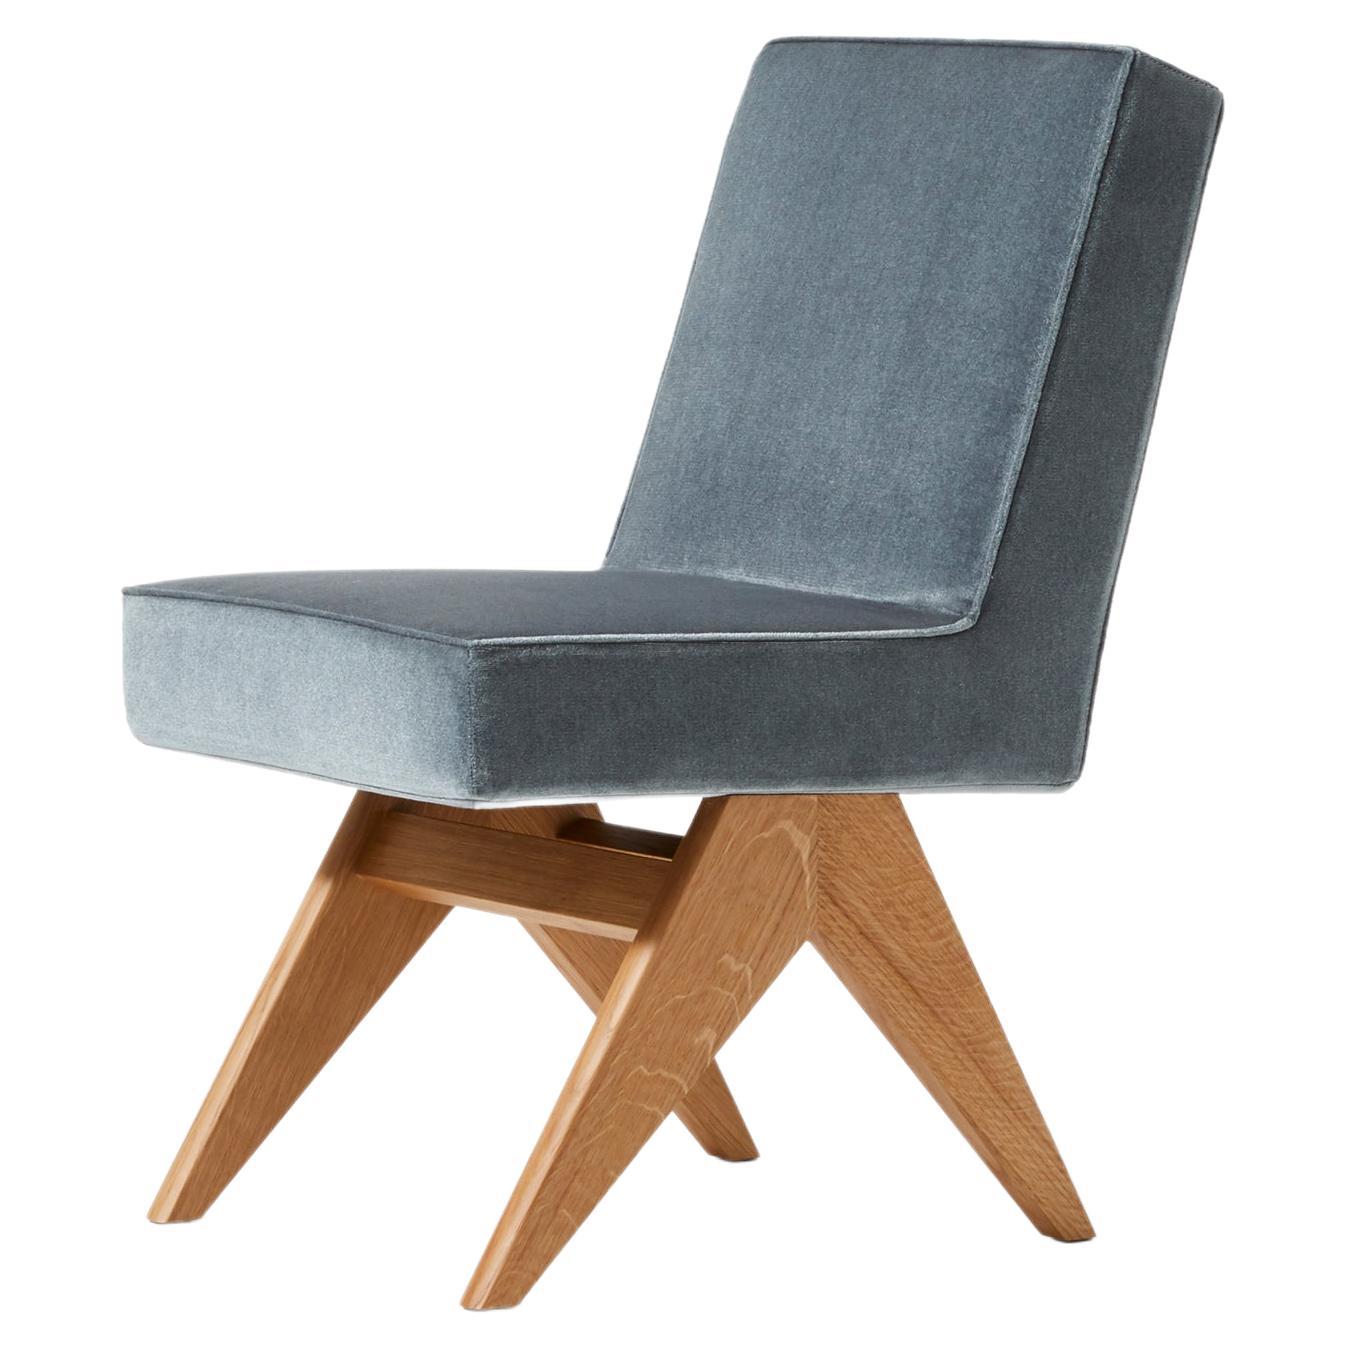 Komitee-Stuhl, entworfen von Pierre Jeanneret um 1950, neu aufgelegt im Jahr 2022.
Hergestellt von Cassina in Italien.

Der Stuhl Committee wird in der ursprünglichen Version und in einer neuen, vielseitigeren Interpretation ohne Armlehnen